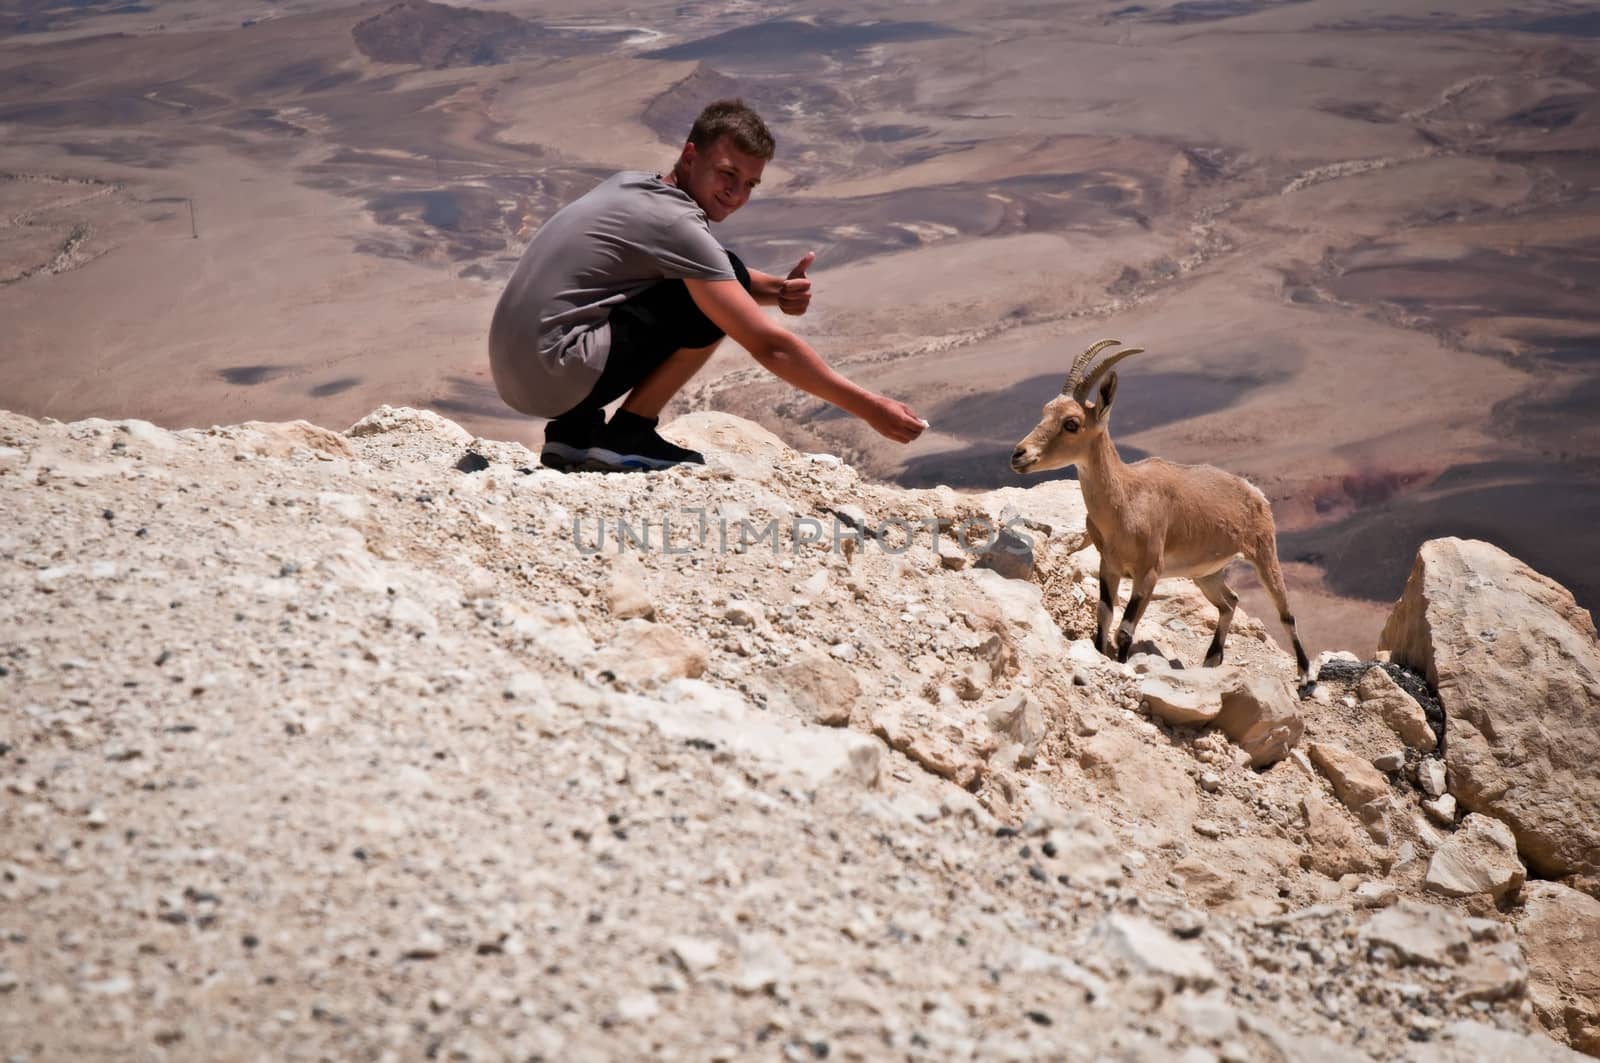 Mountain goat in the Negev desert. Israel.